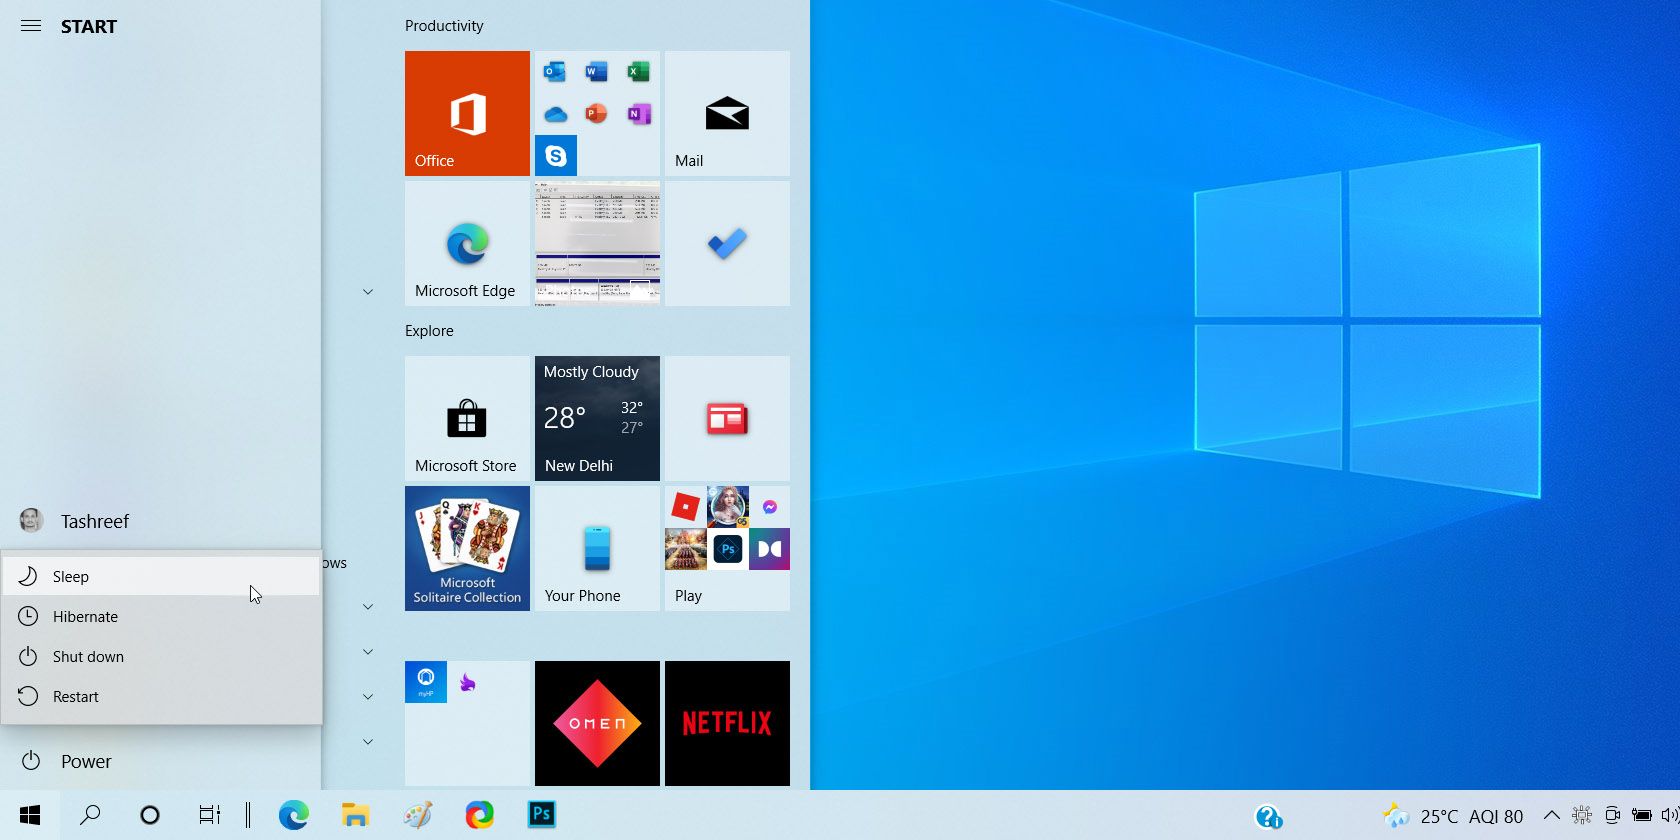 Comment restaurer une option de veille manquante dans Windows 10